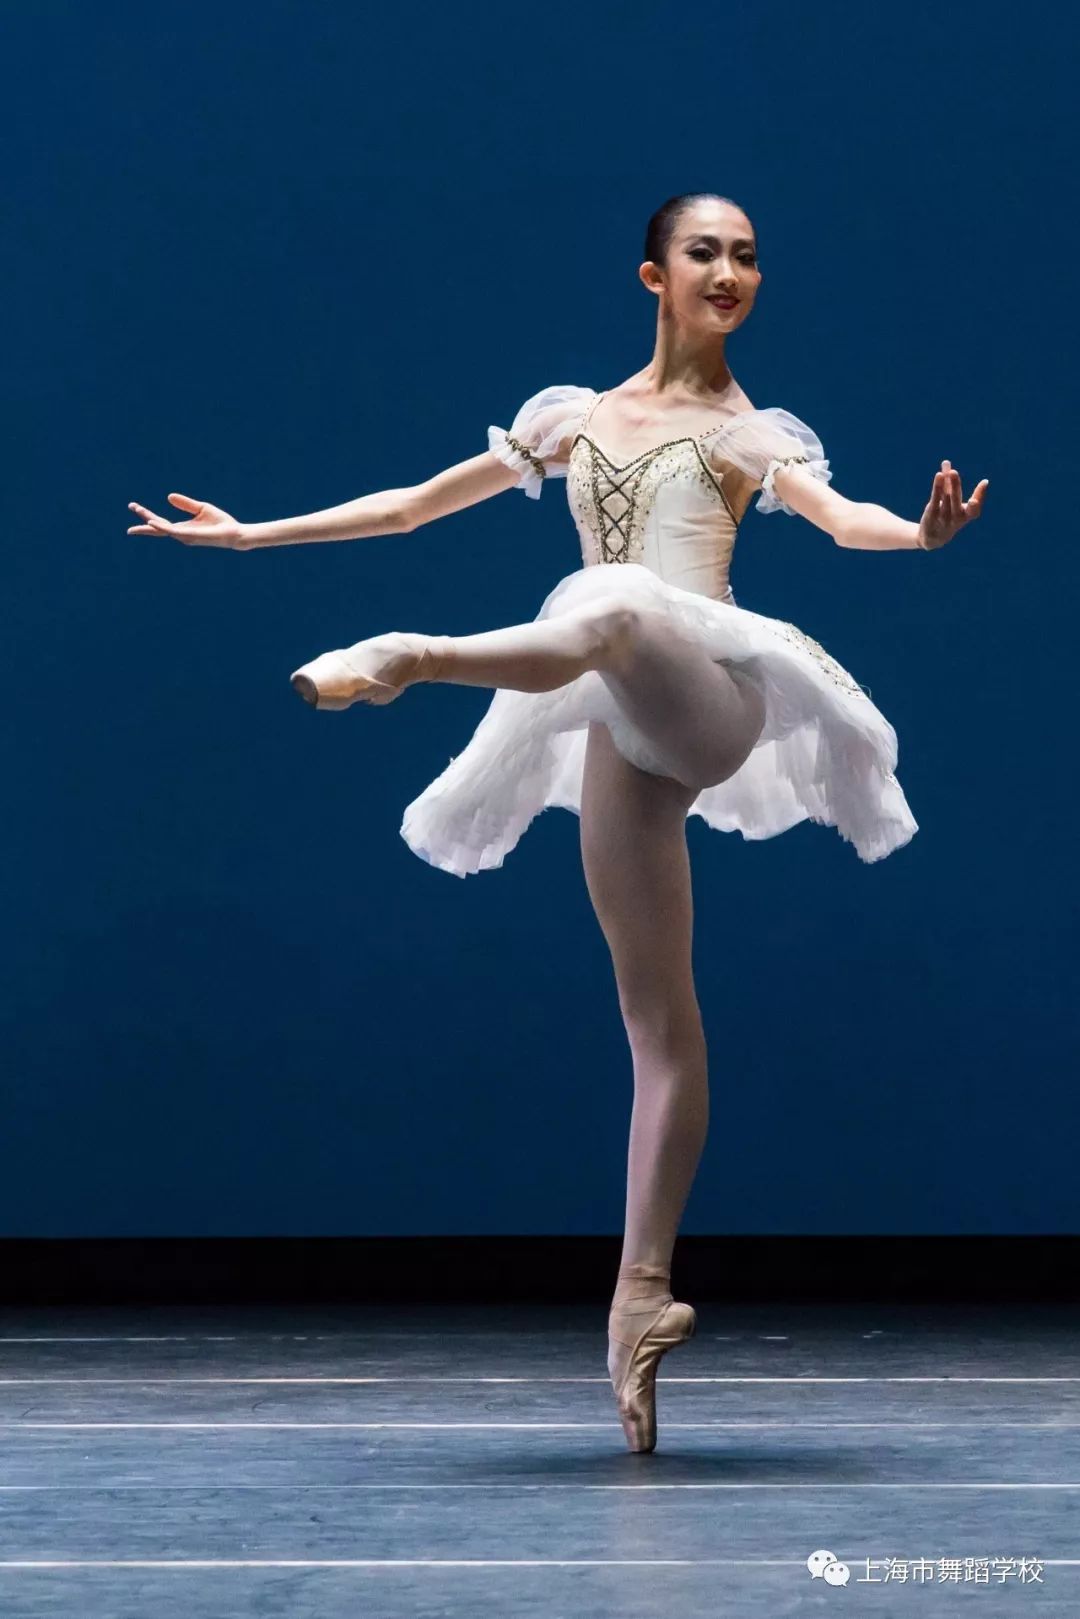 花开有时 三创佳绩 ——第五届北京国际芭蕾舞暨编舞比赛喜报